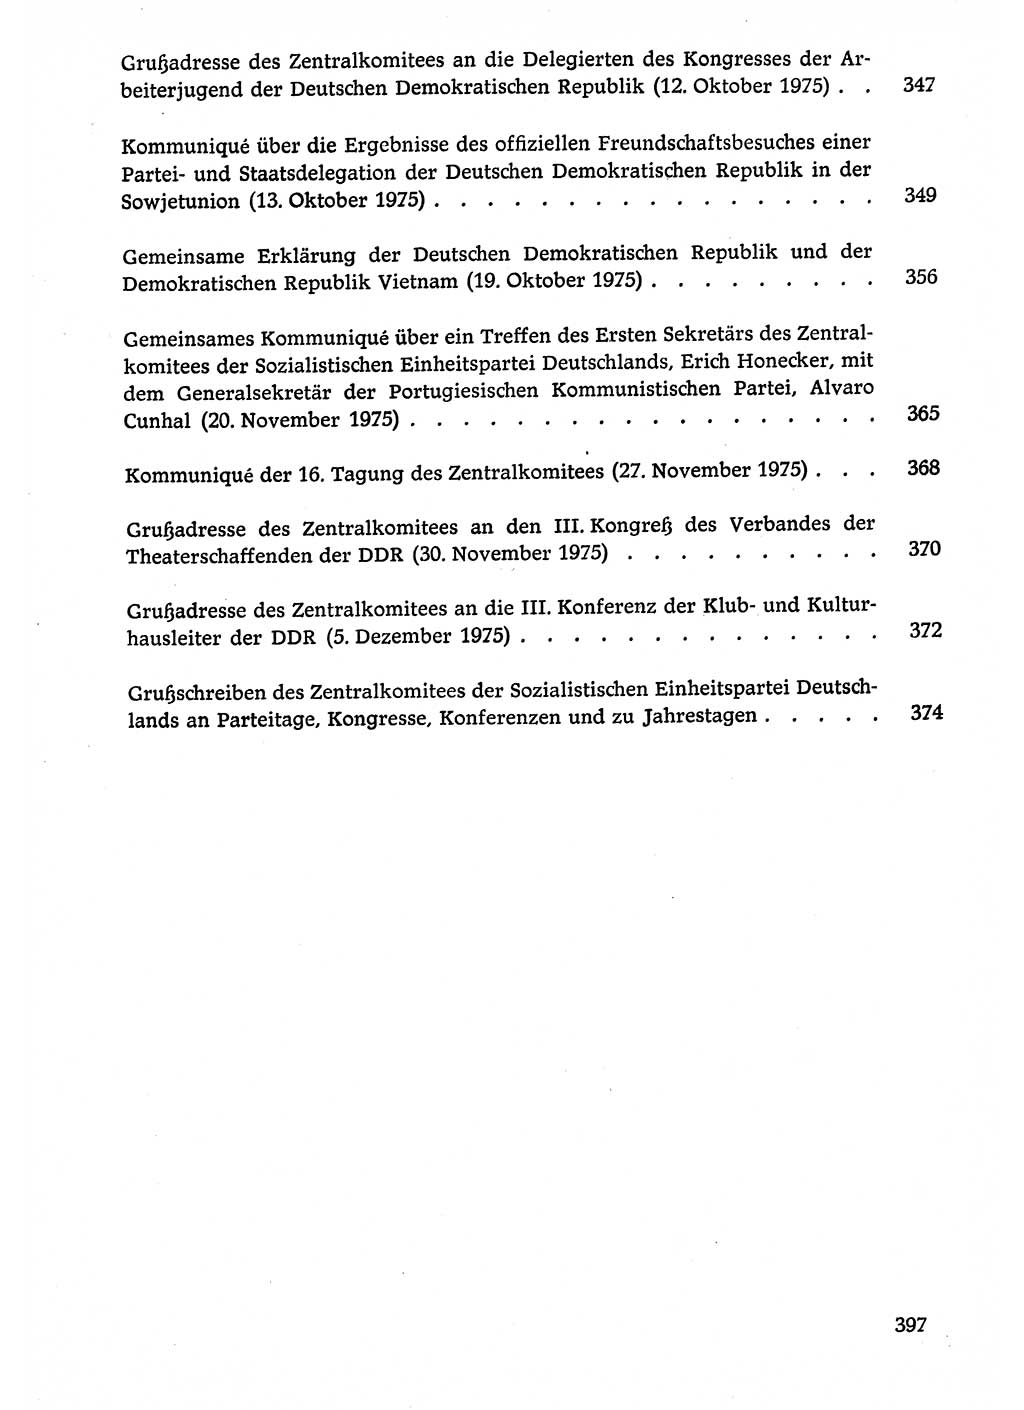 Dokumente der Sozialistischen Einheitspartei Deutschlands (SED) [Deutsche Demokratische Republik (DDR)] 1974-1975, Seite 397 (Dok. SED DDR 1978, Bd. â…©â…¤, S. 397)